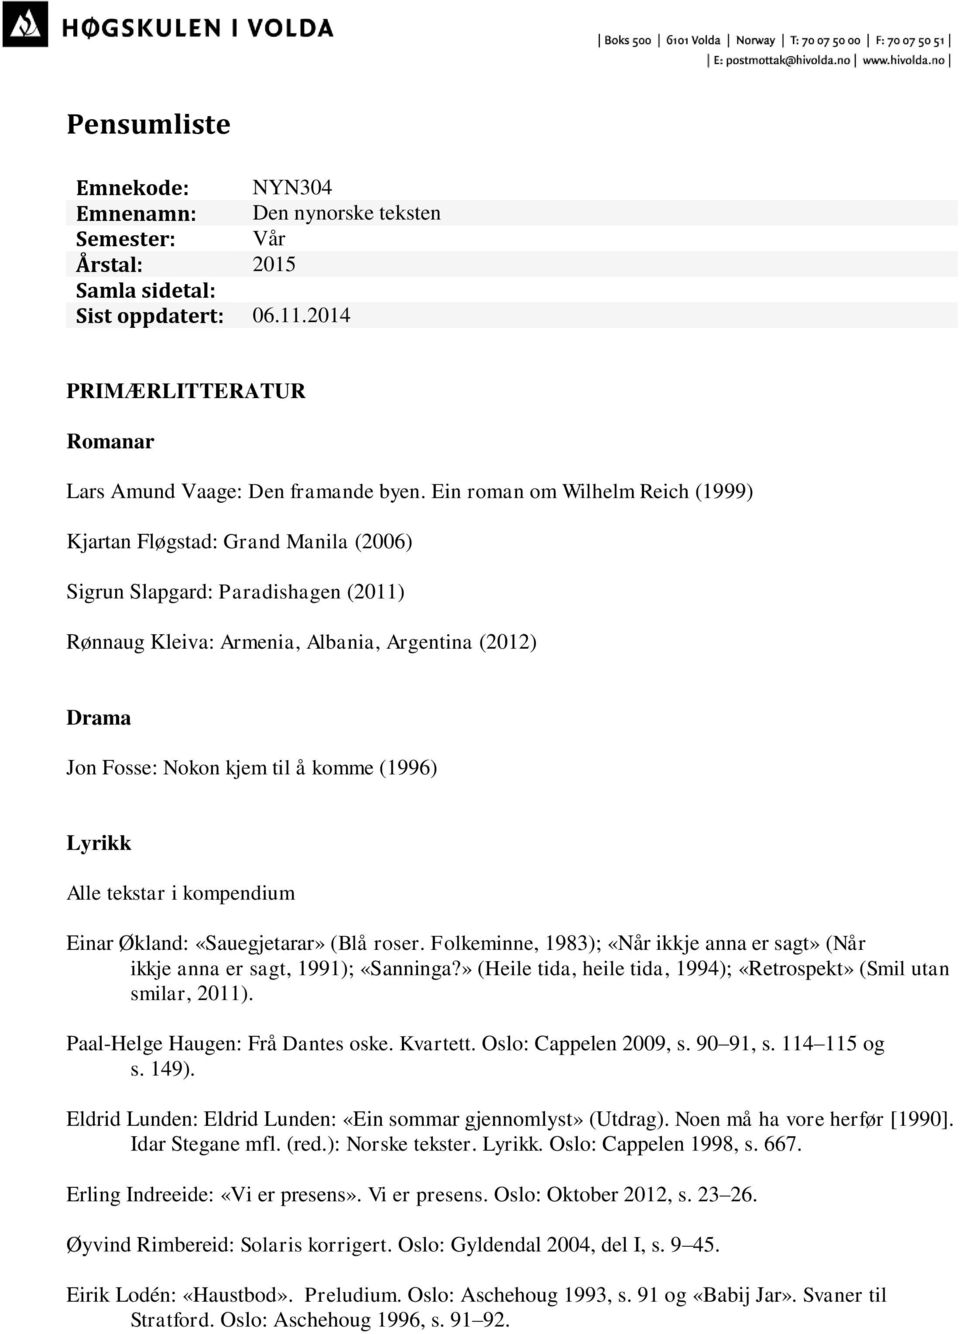 (1996) Lyrikk Alle tekstar i kompendium Einar Økland: «Sauegjetarar» (Blå roser. Folkeminne, 1983); «Når ikkje anna er sagt» (Når ikkje anna er sagt, 1991); «Sanninga?